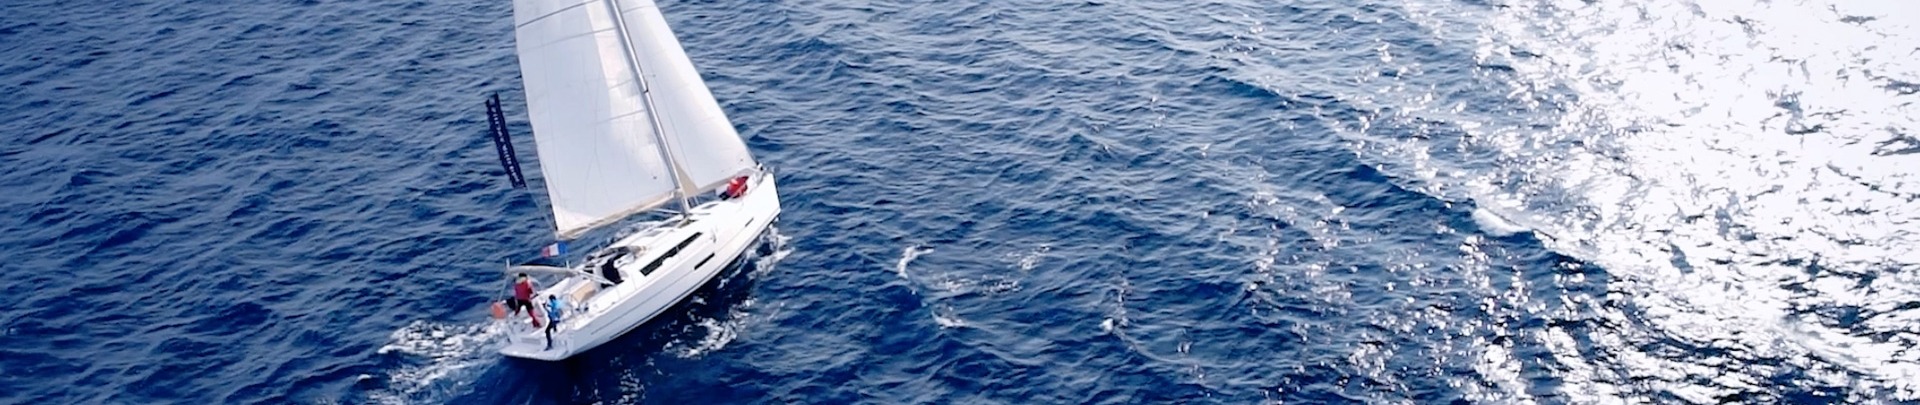 Een zeilboot op de zee